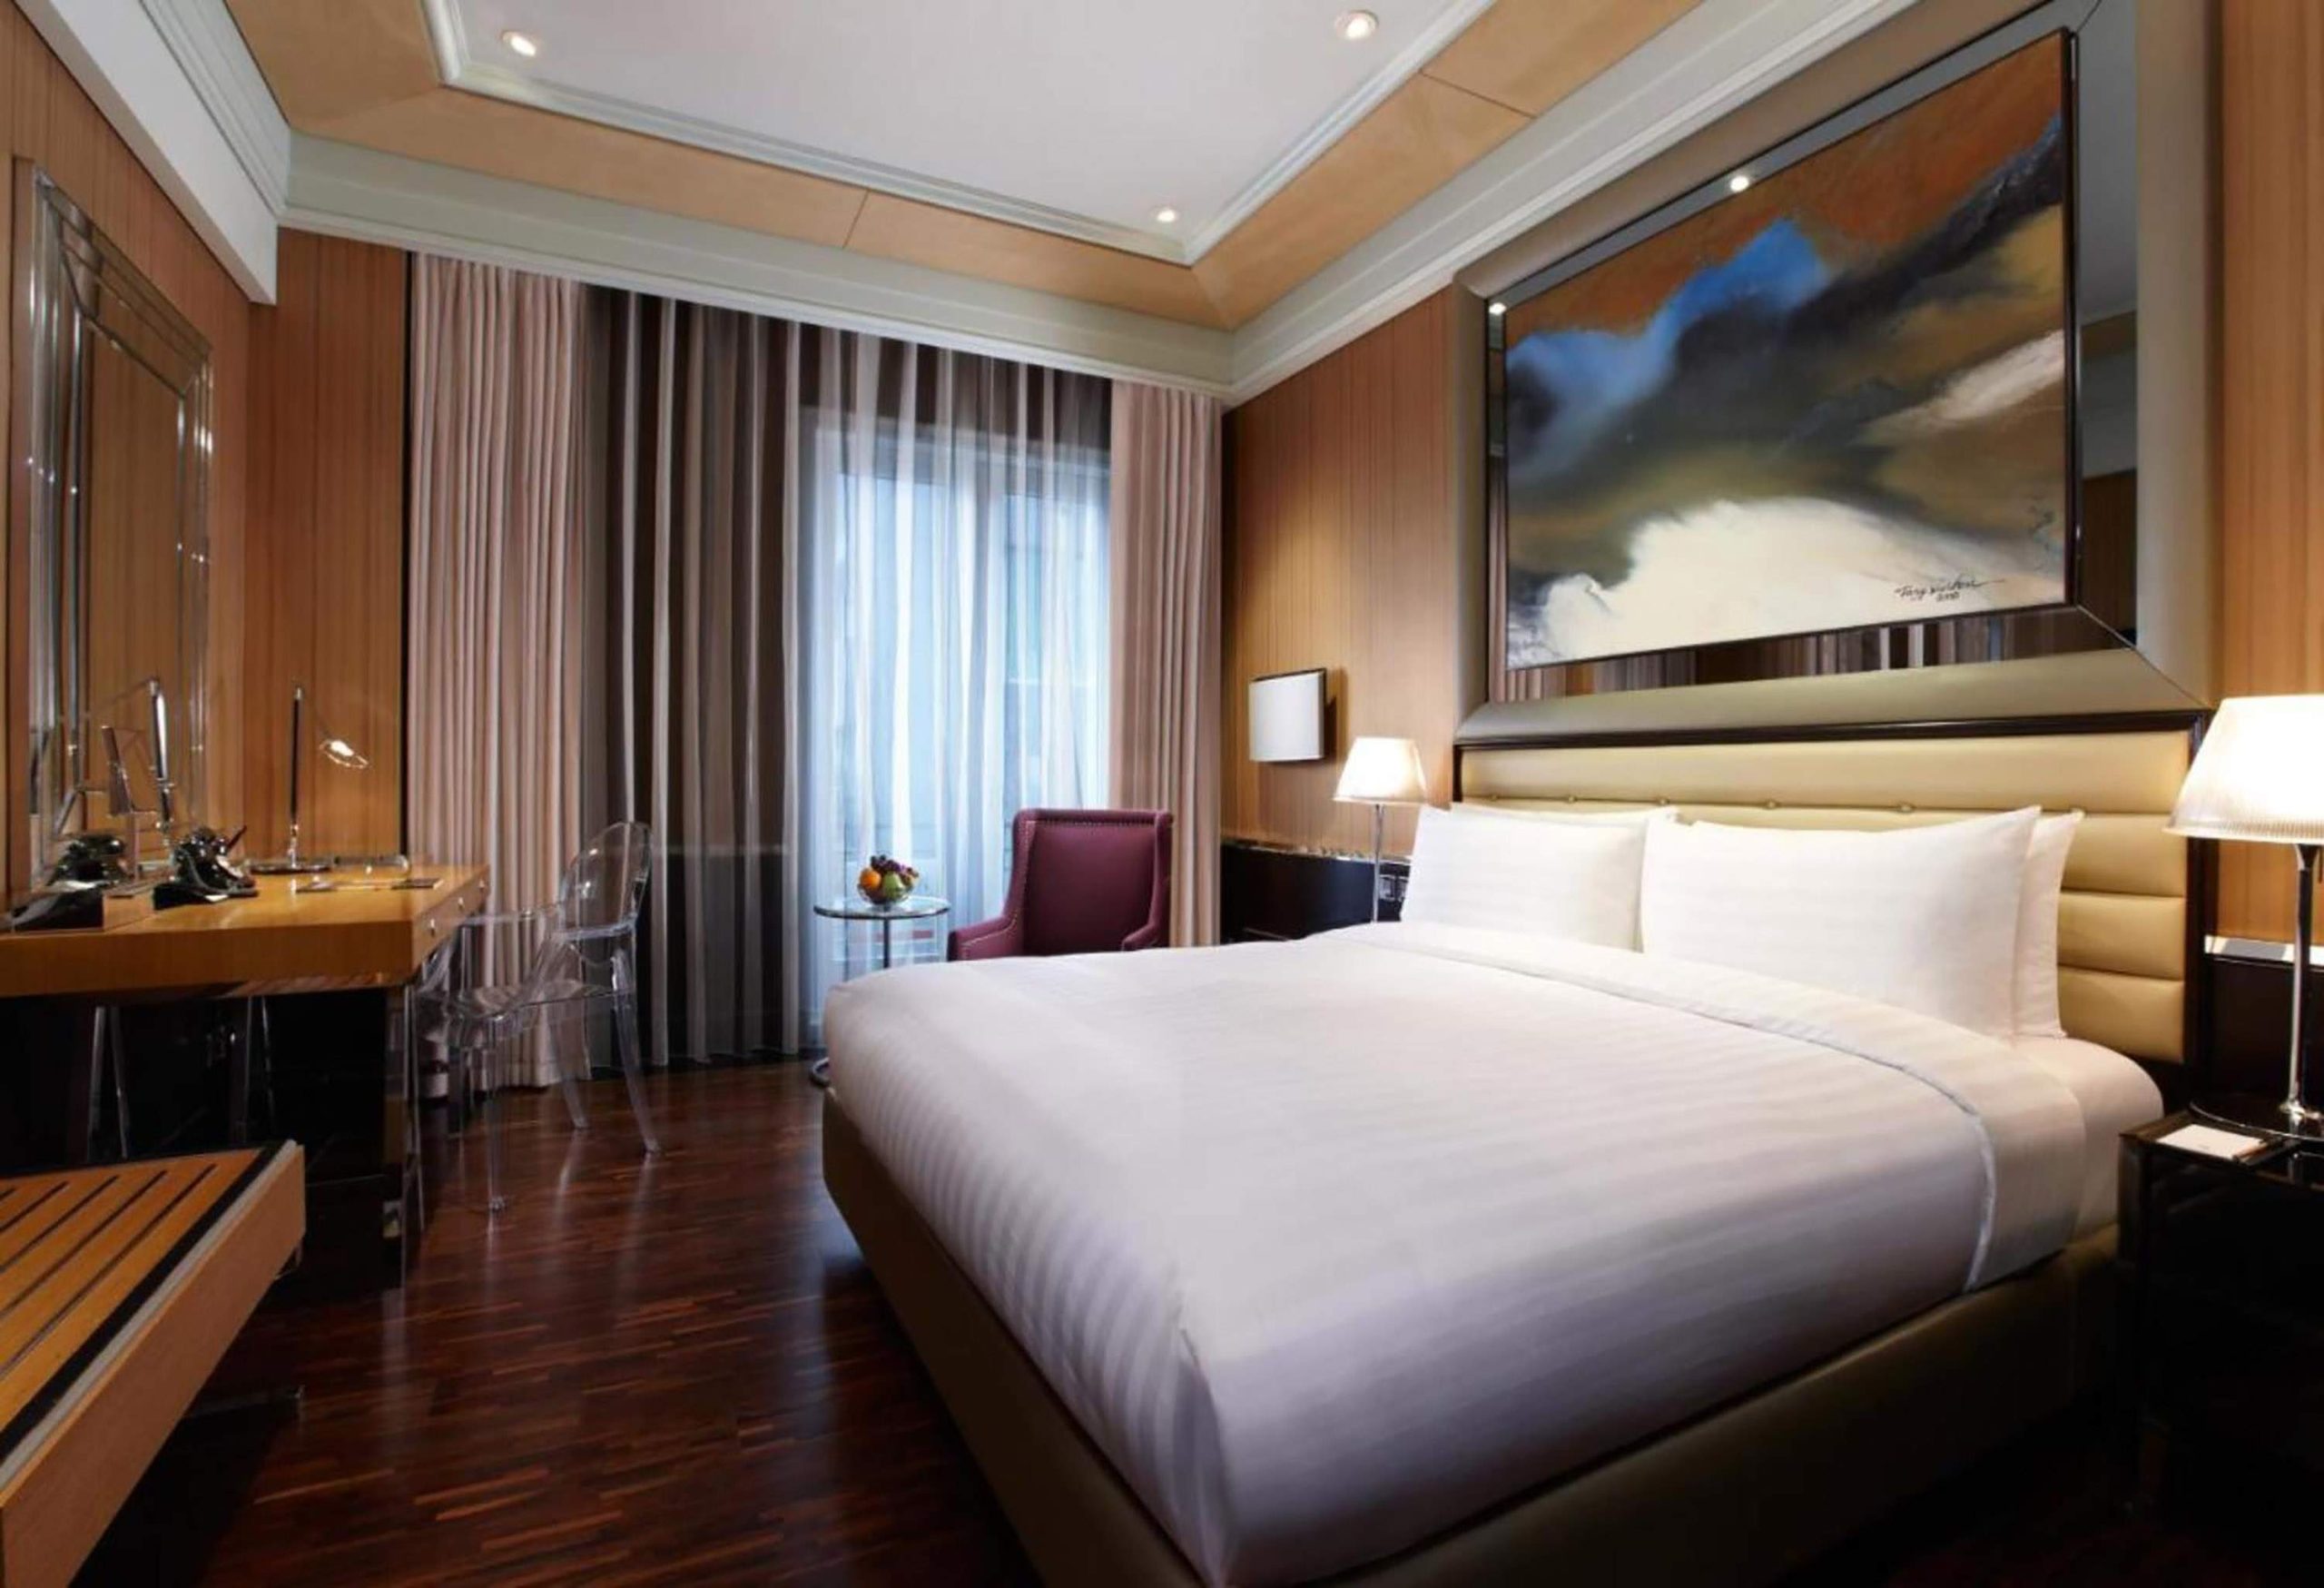 怡亨酒店,Hotel Eclat Taipei,大安區住宿推薦, 大安區飯店, 大安 飯店